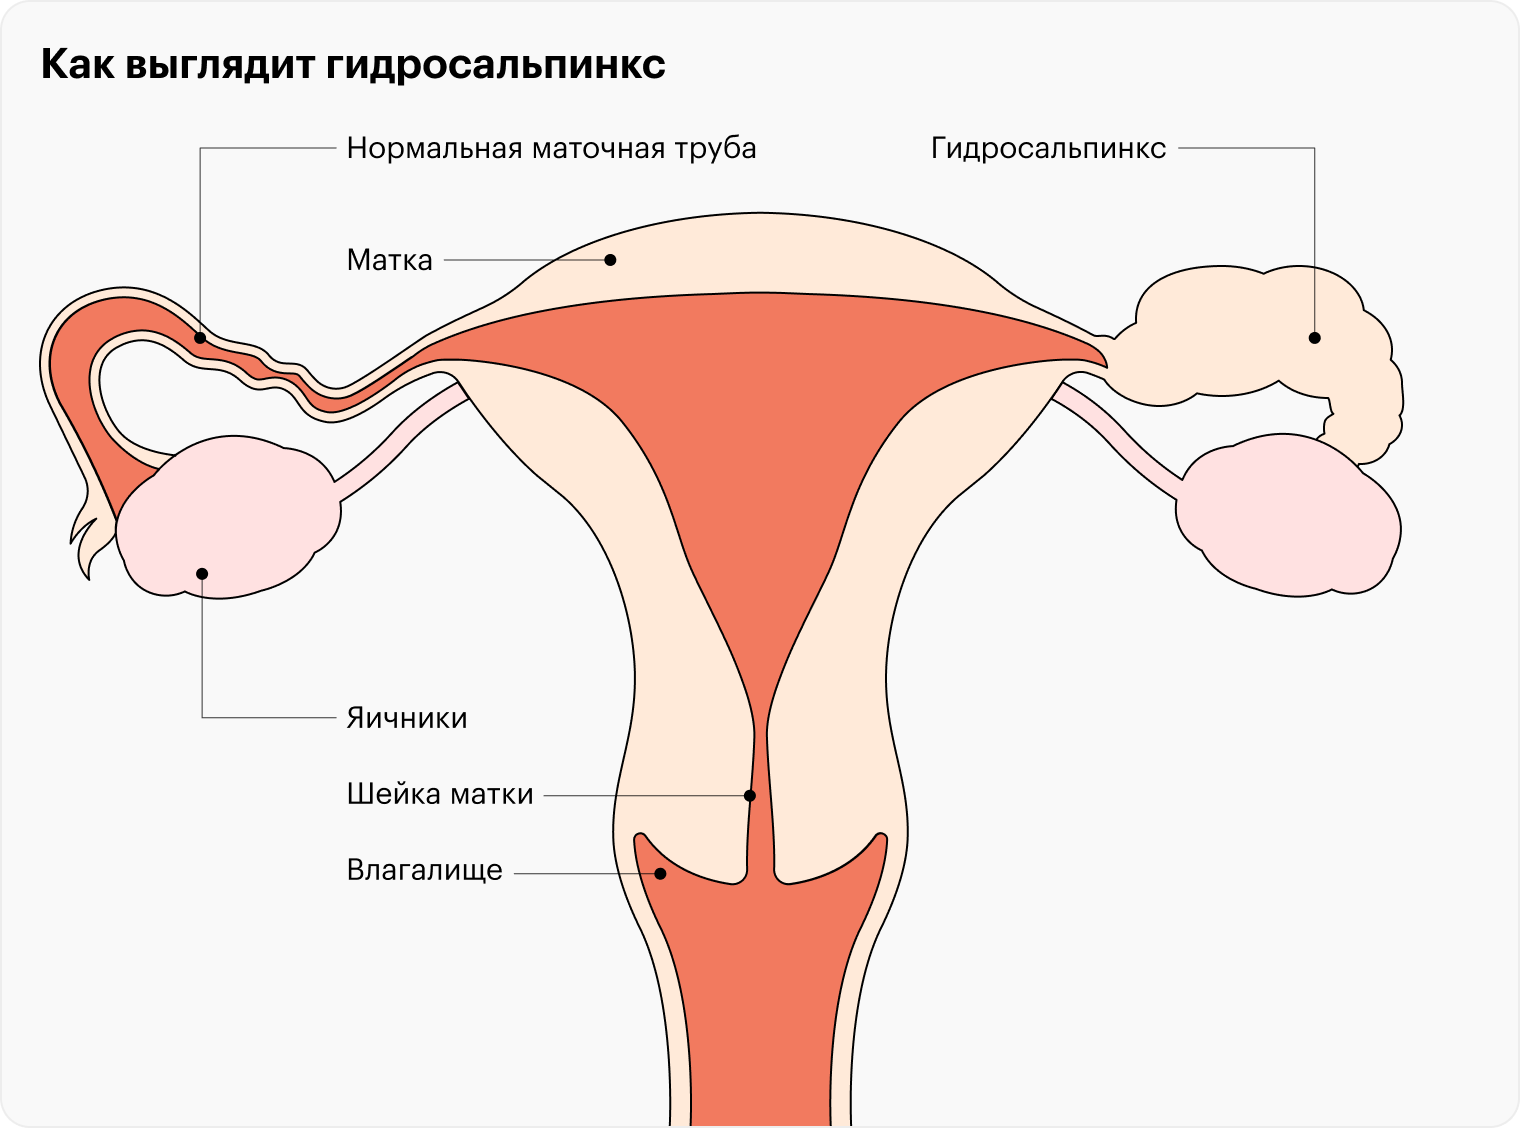 мастурбации и бесплодие у женщин фото 12